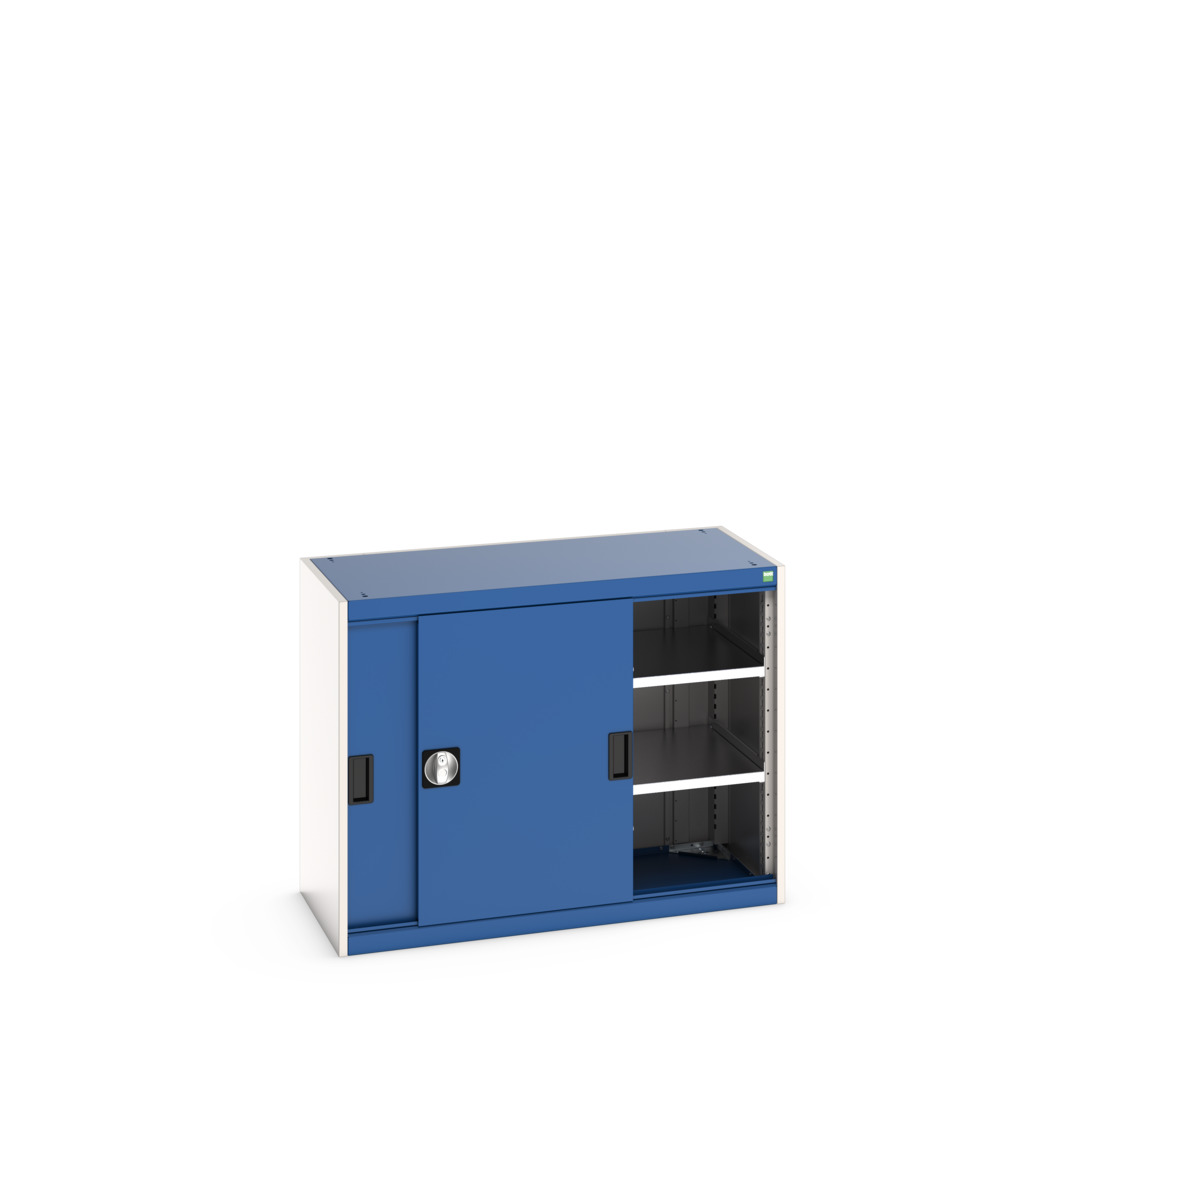 40013067.11V - cubio cupboard